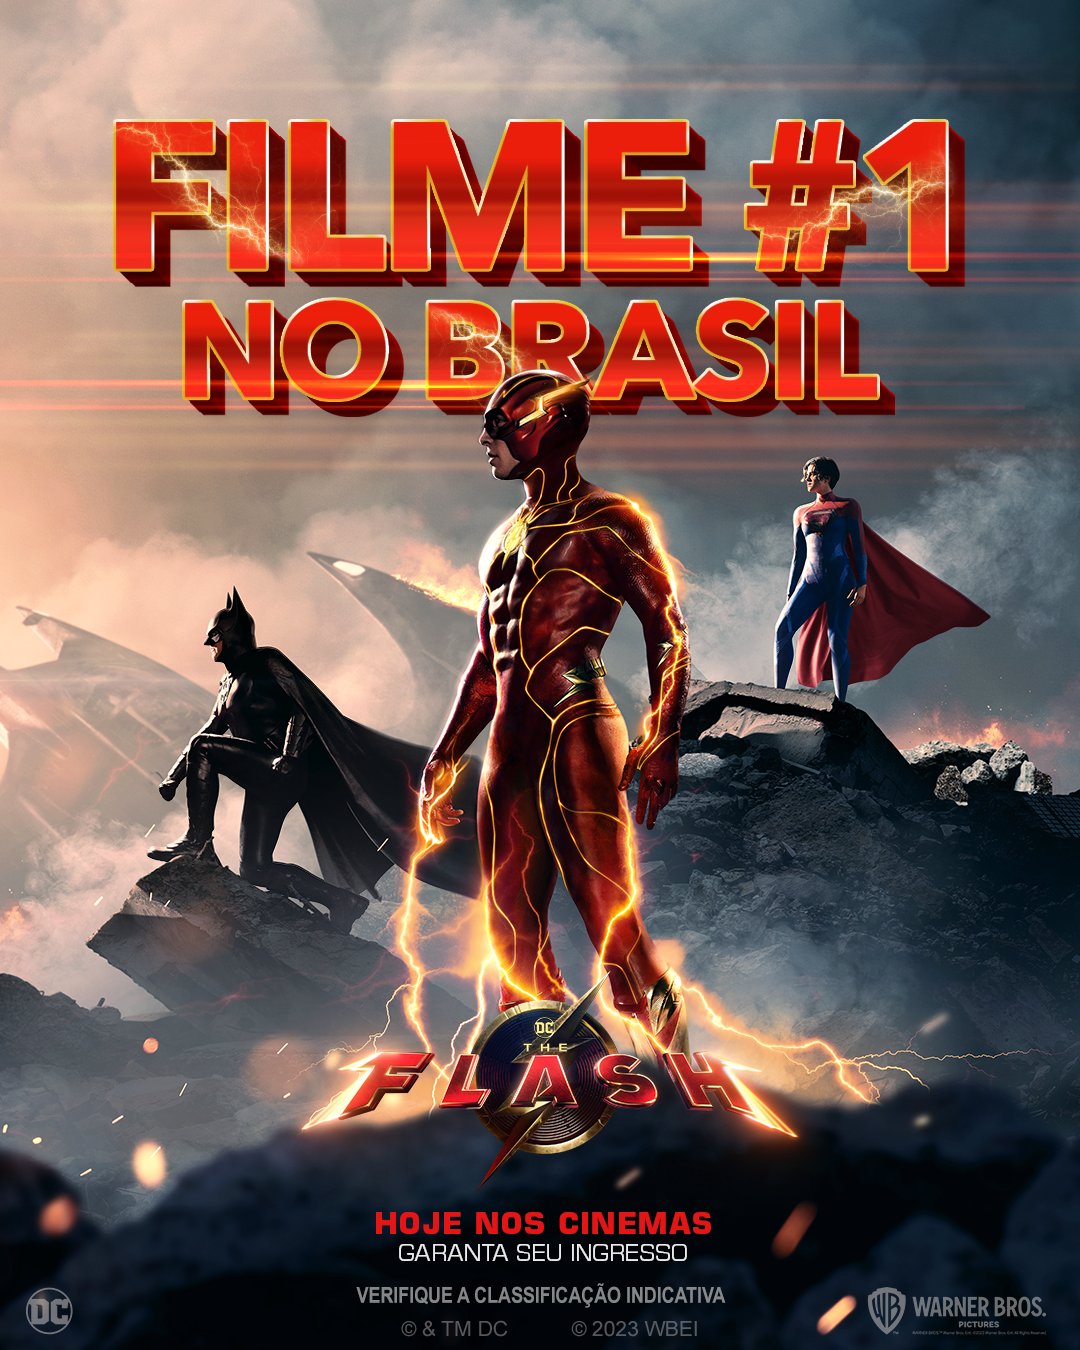 No Brasil, The Flash lidera a bilheteria em fim de semana de